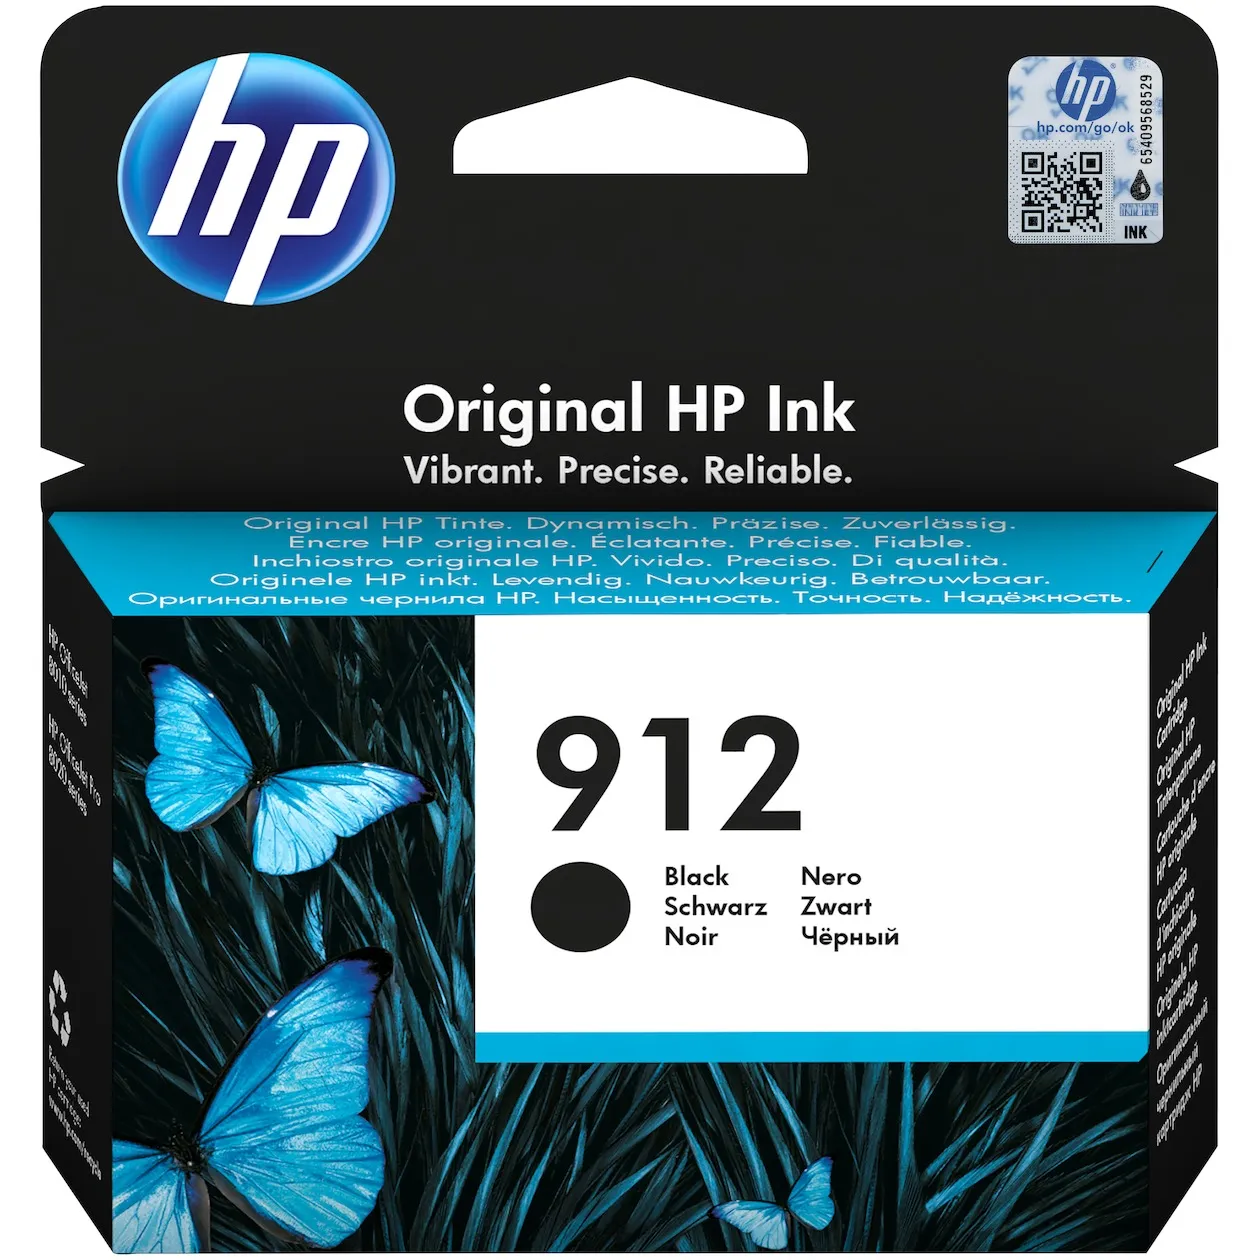 HP 912 cartridge Black Zwart